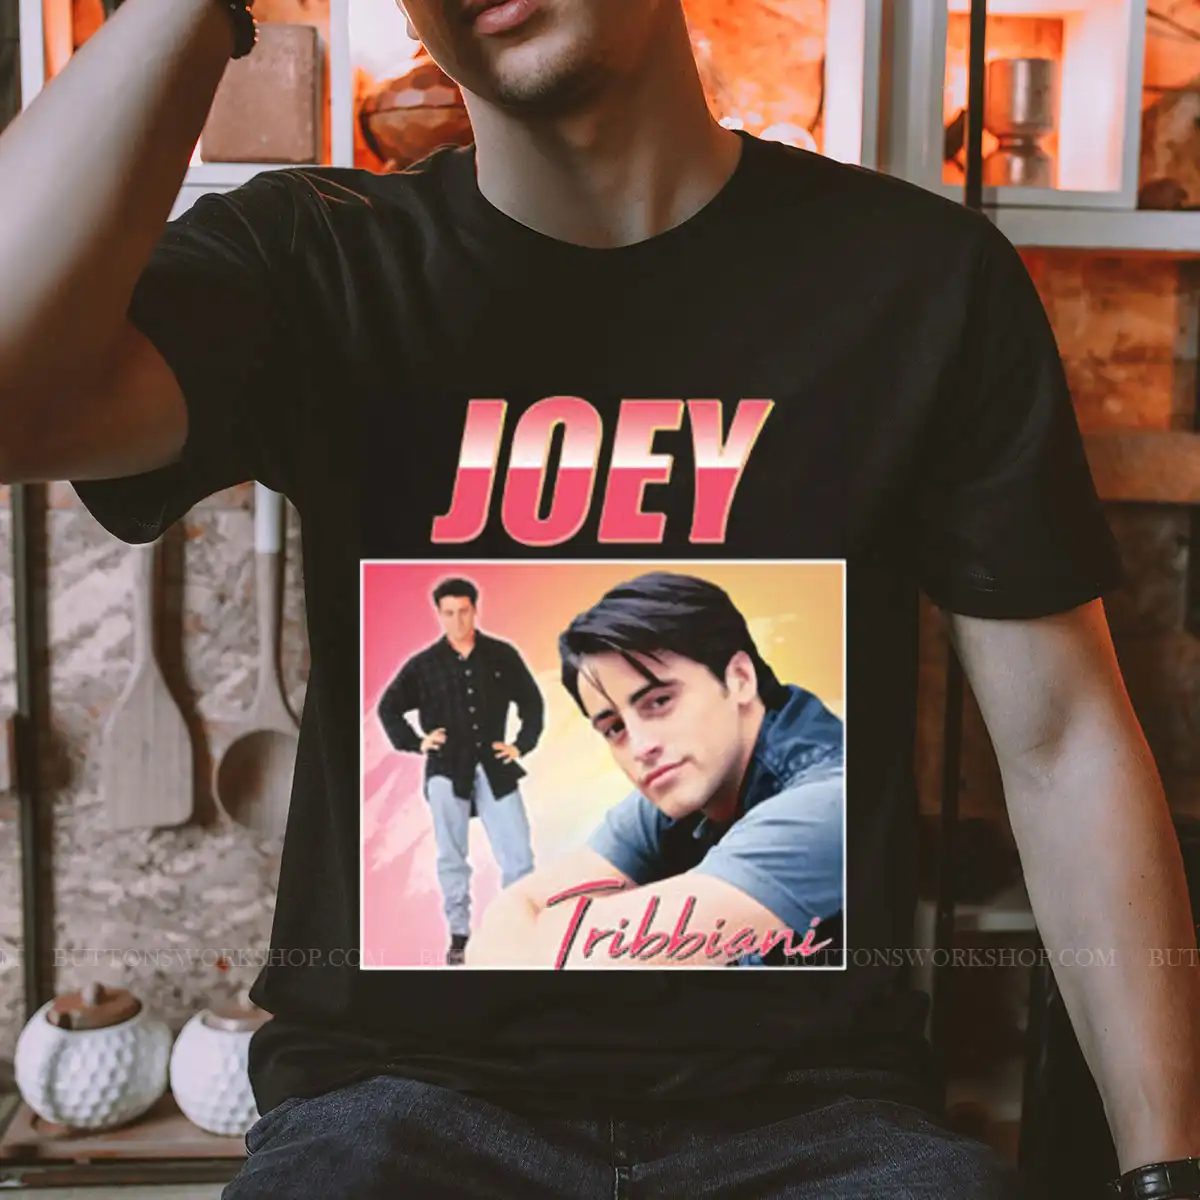 Joey Tribbiani T Shirt Unisex Tshirt